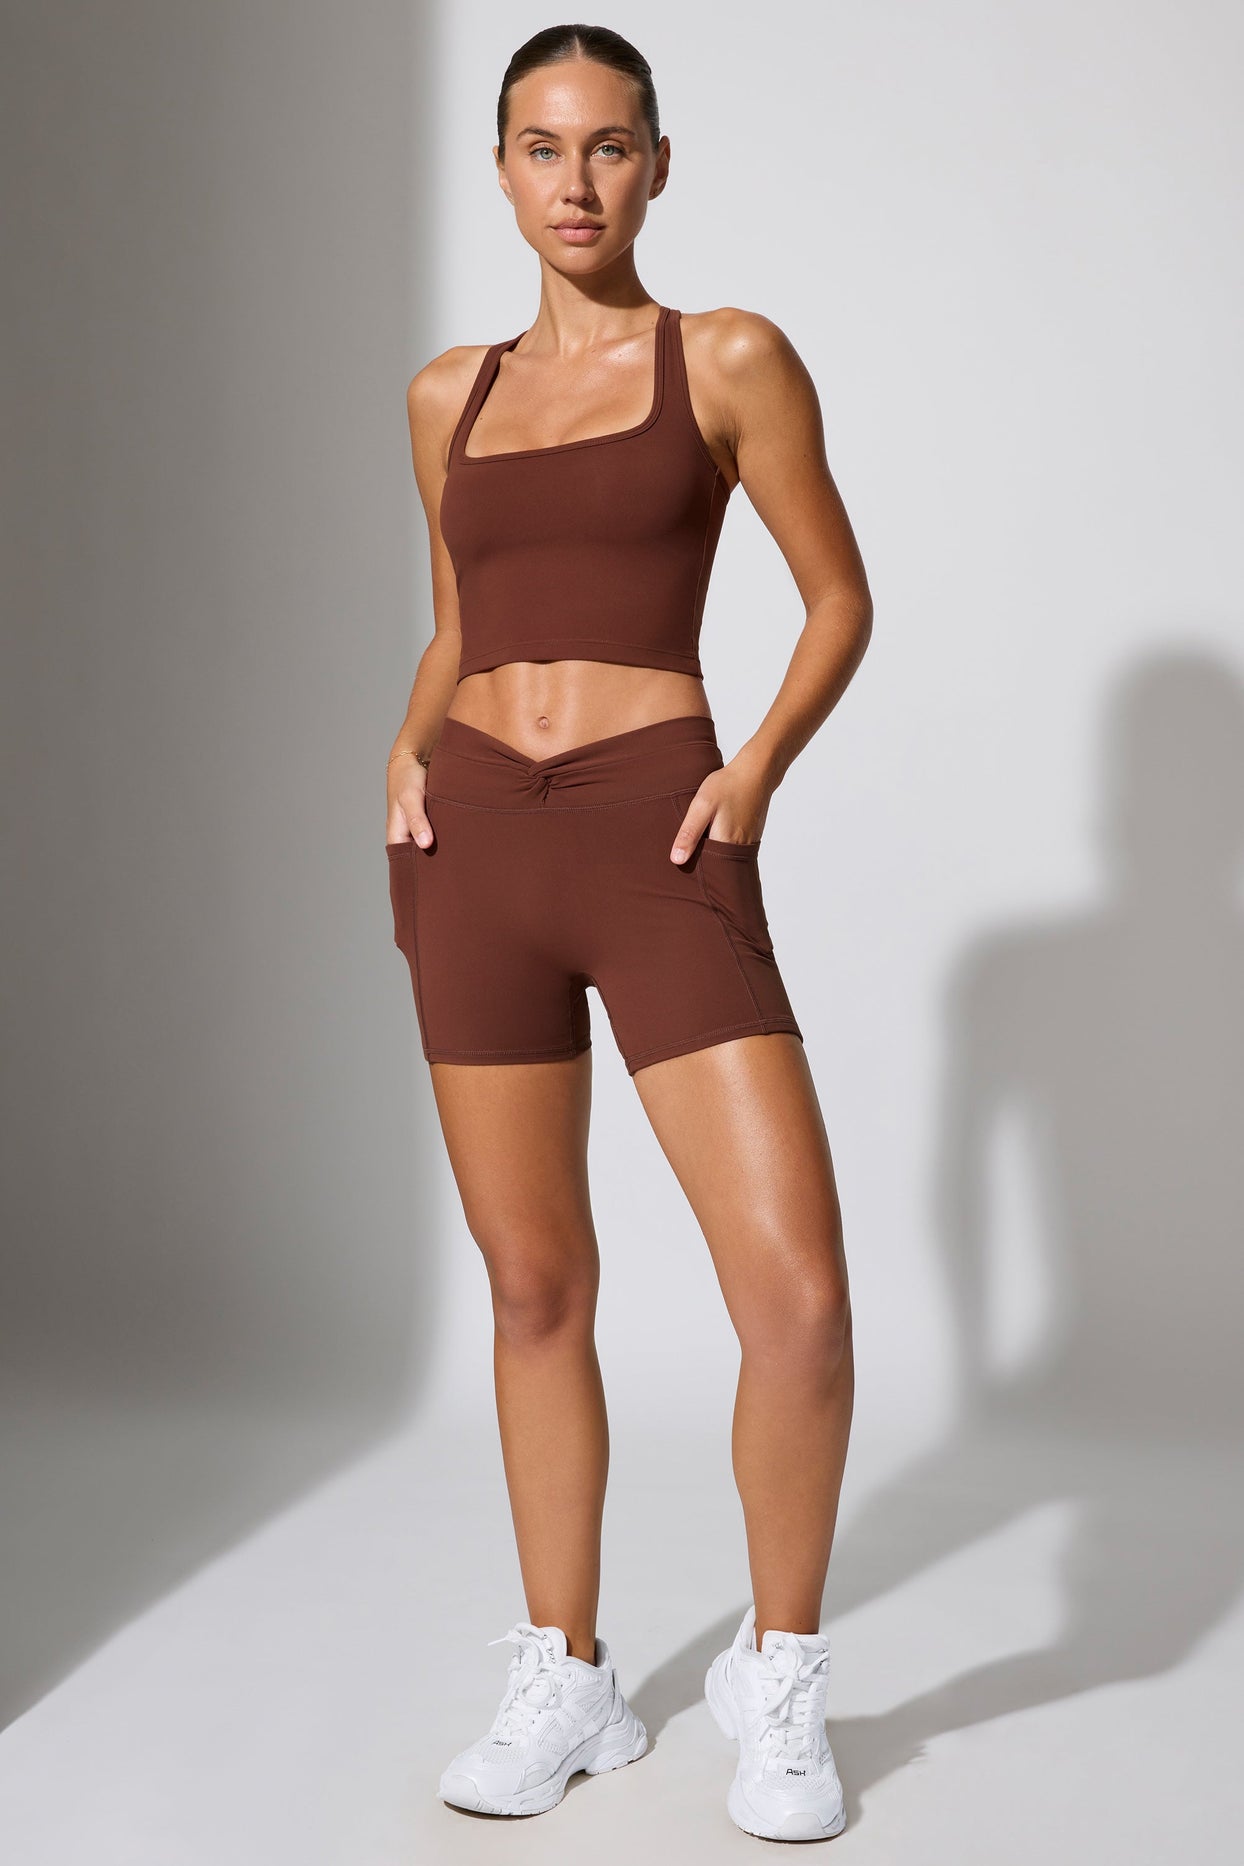 Minishorts con cintura torcida y bolsillos en color chocolate